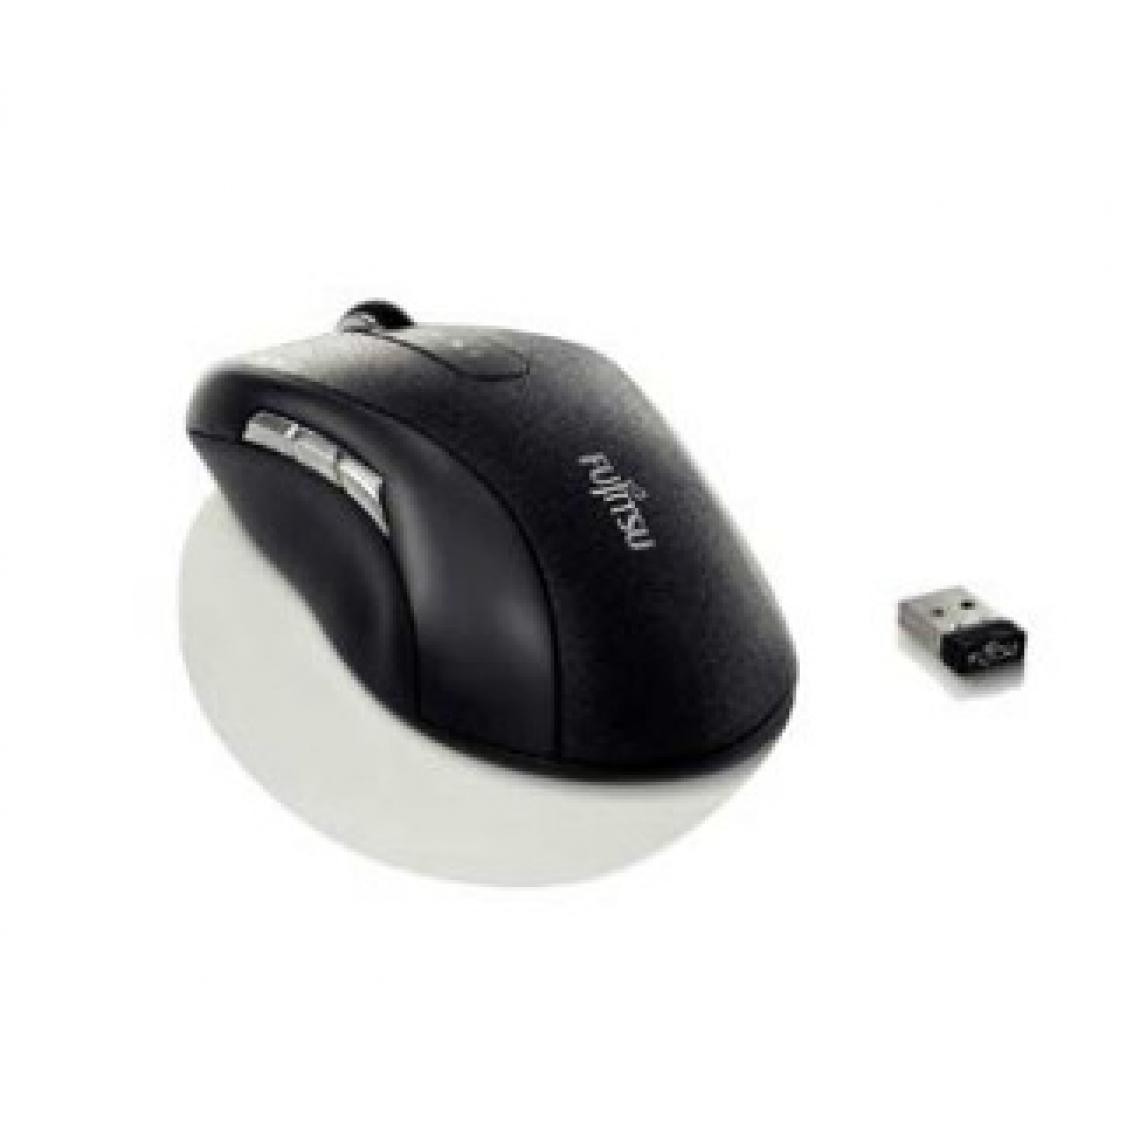 Fujitsu - Fujitsu WI960 mouse - Souris